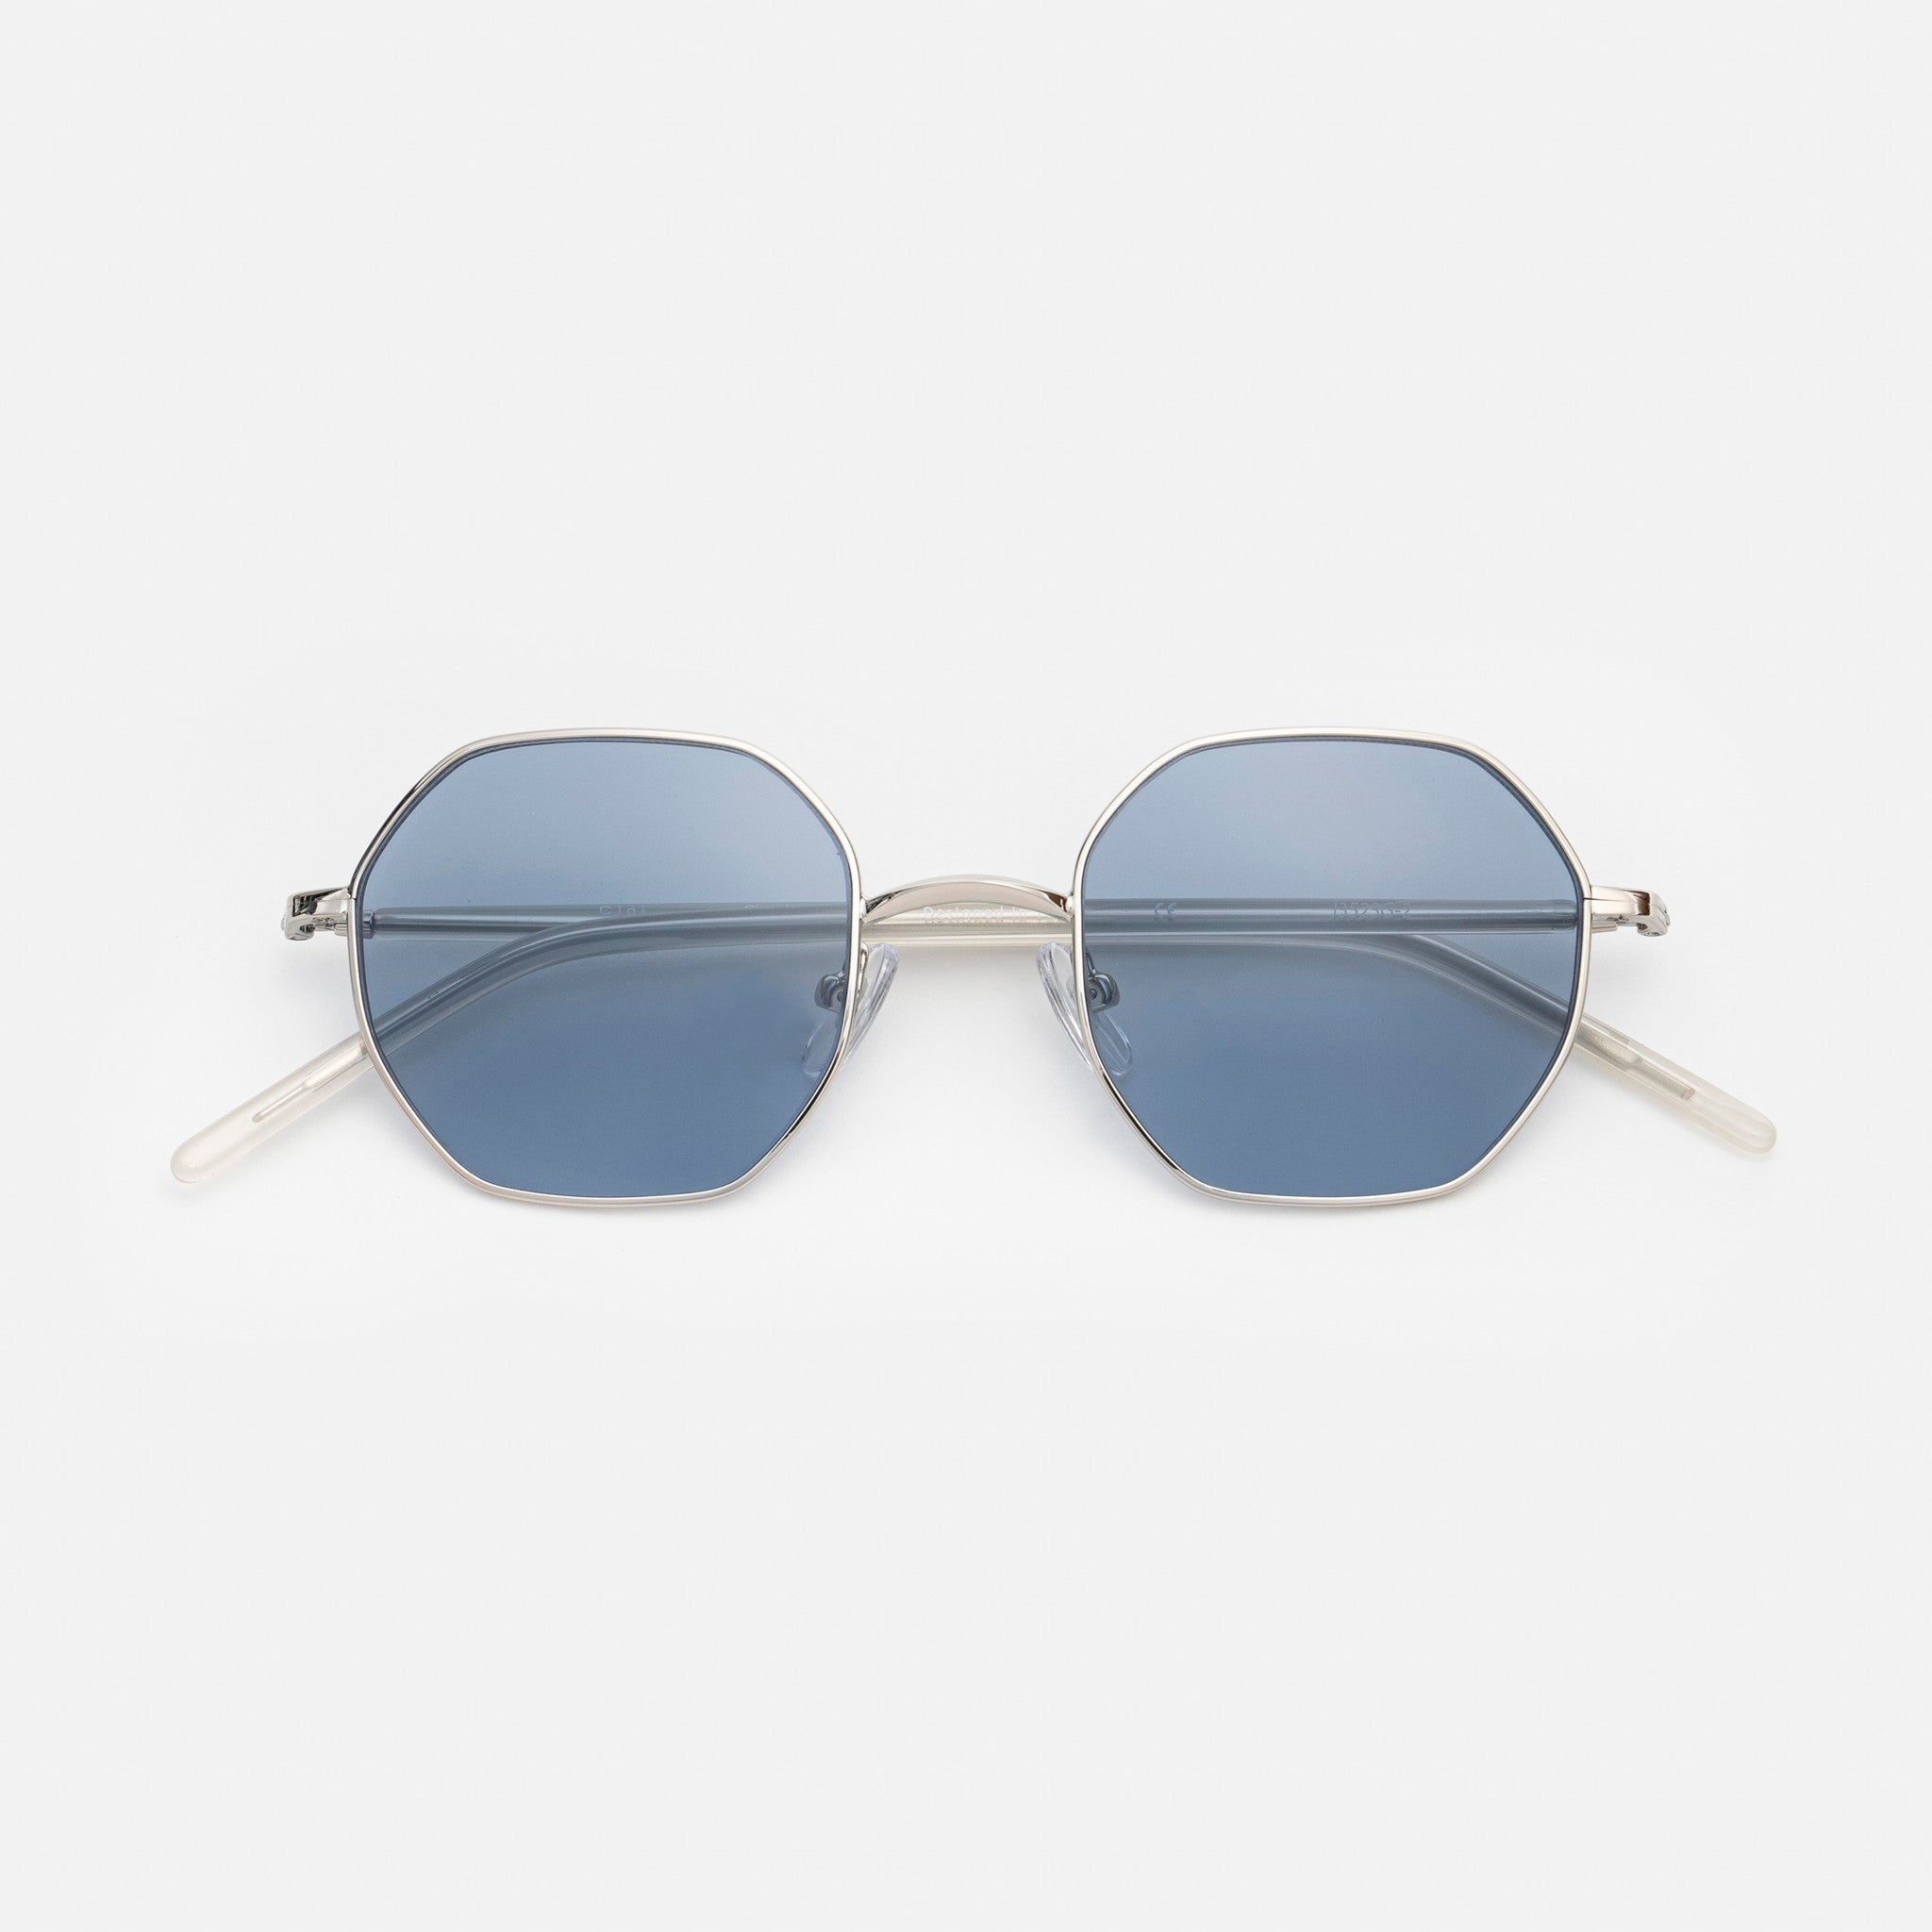 【Ciqi】CHERYL サングラスClear White  Blue Lens sunglasses(シェリル クリアホワイト ブルーレンズ)